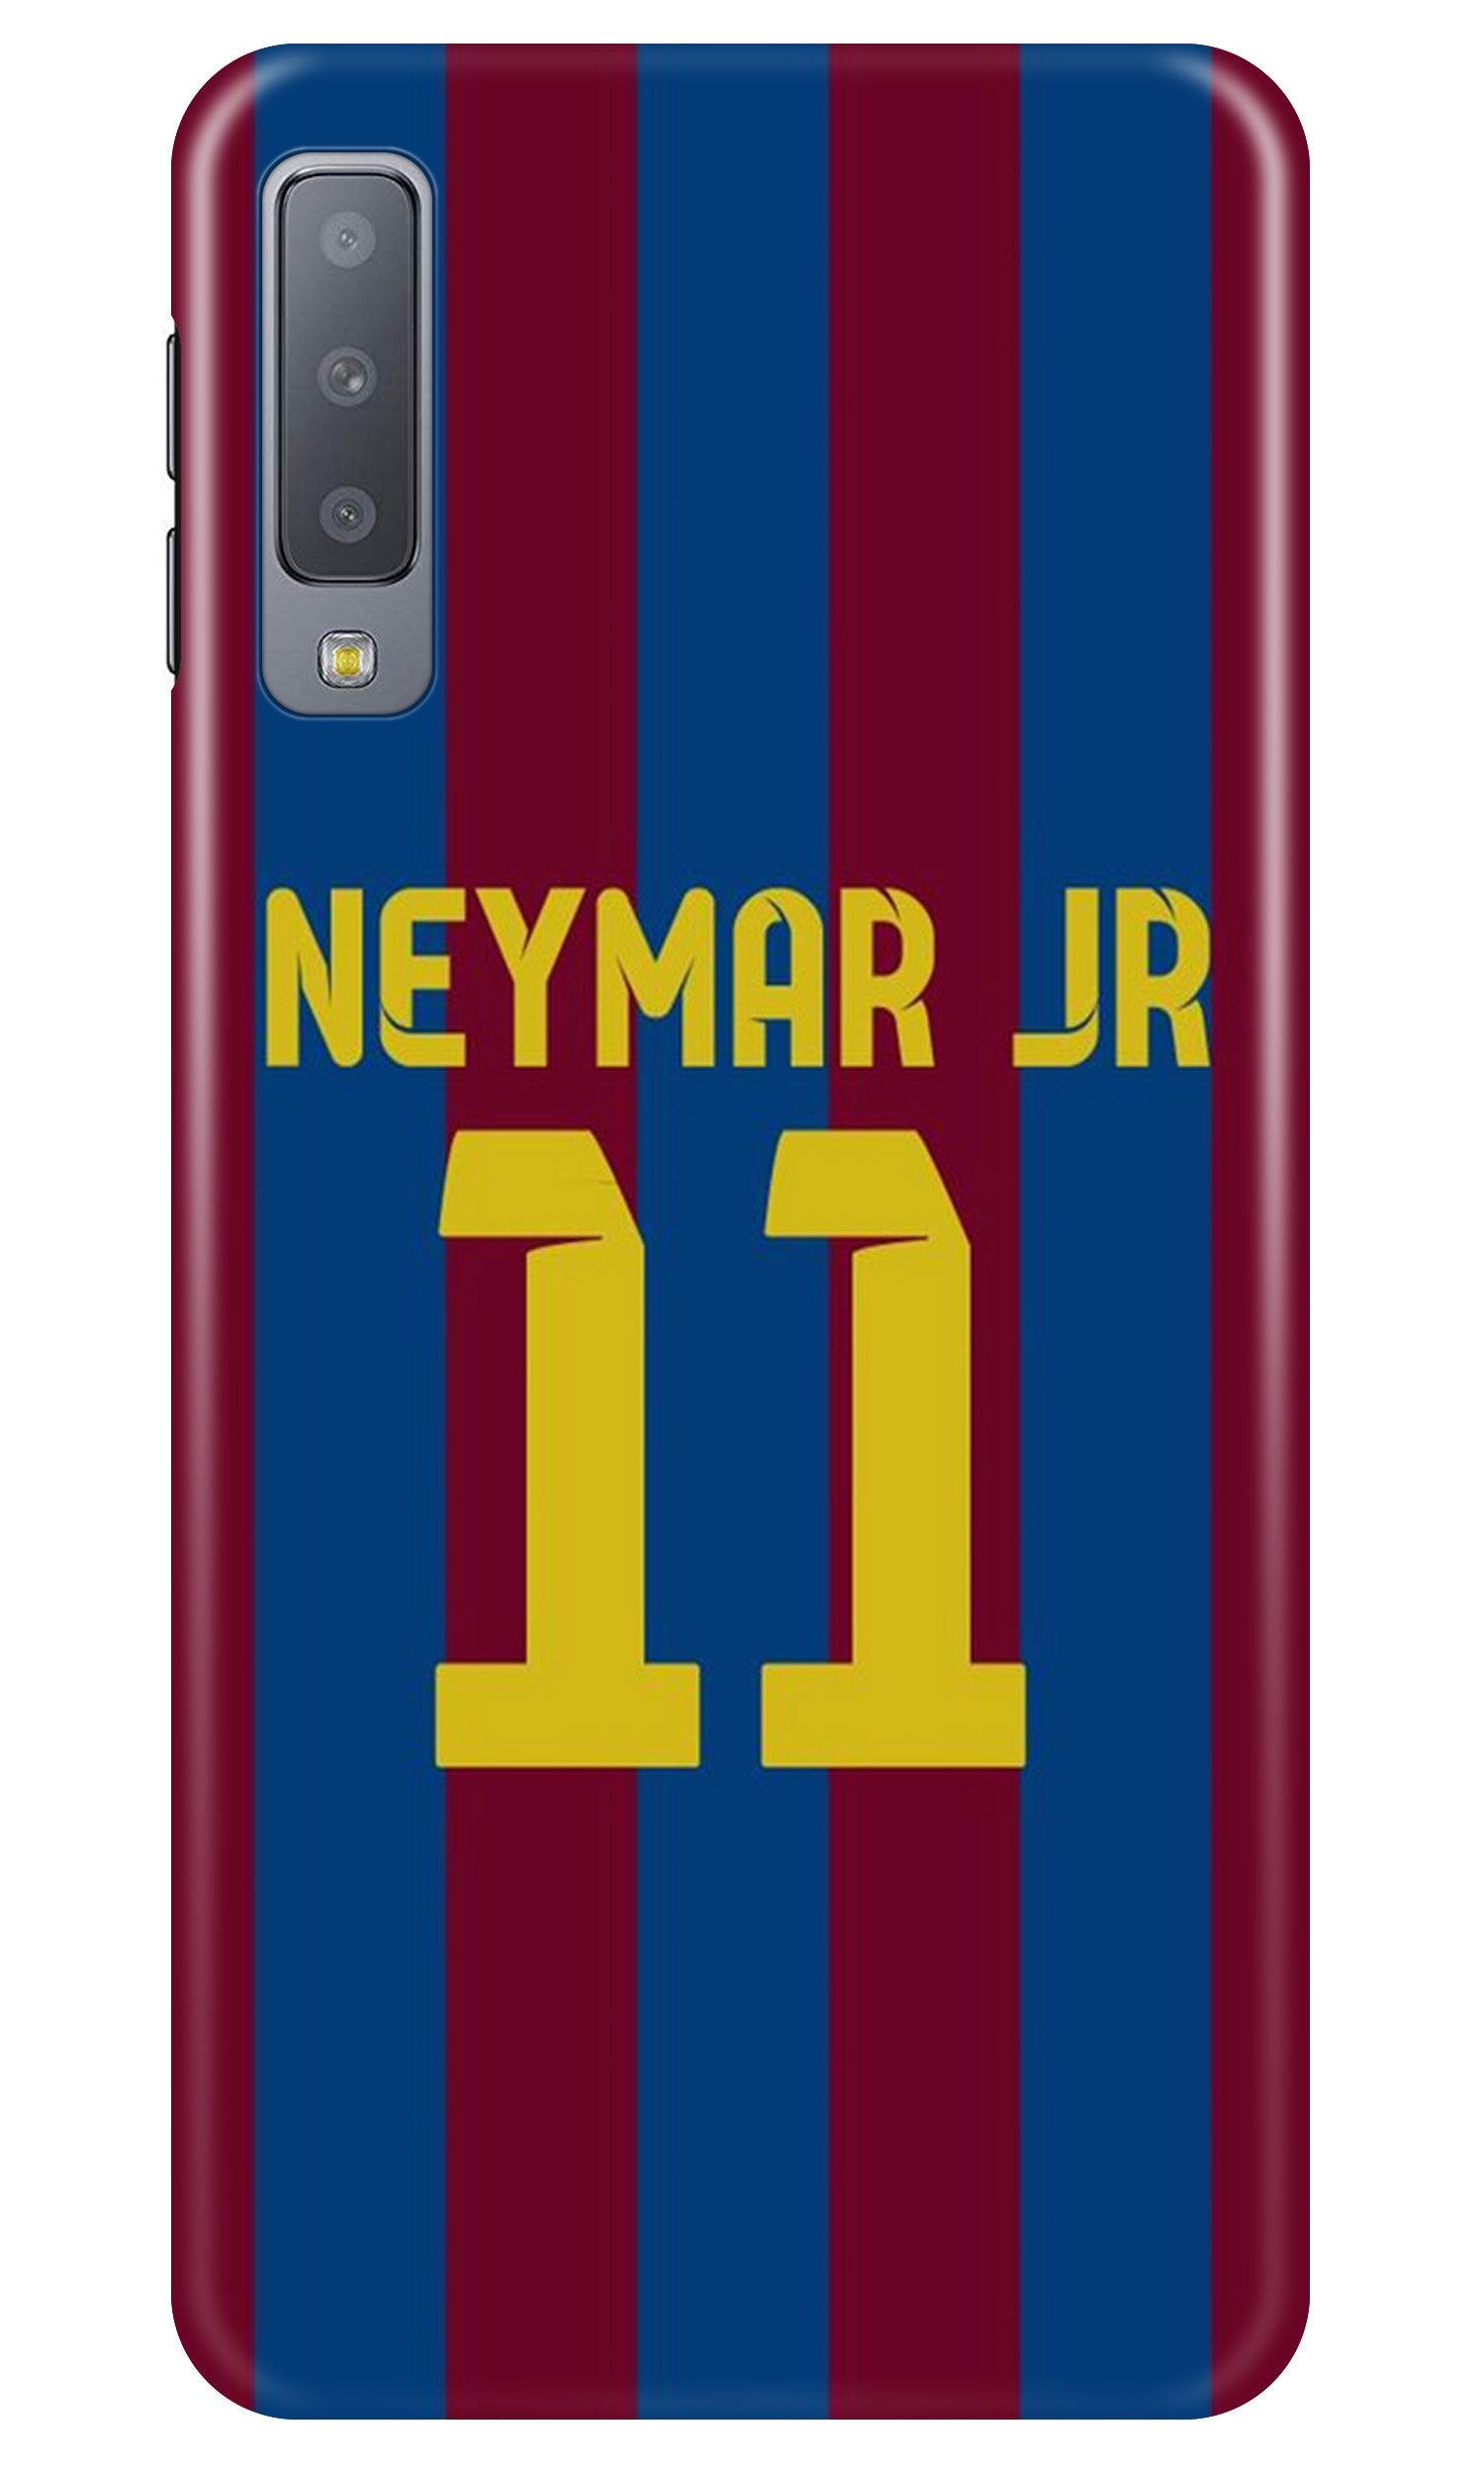 Neymar Jr Case for Samung Galaxy A70s(Design - 162)